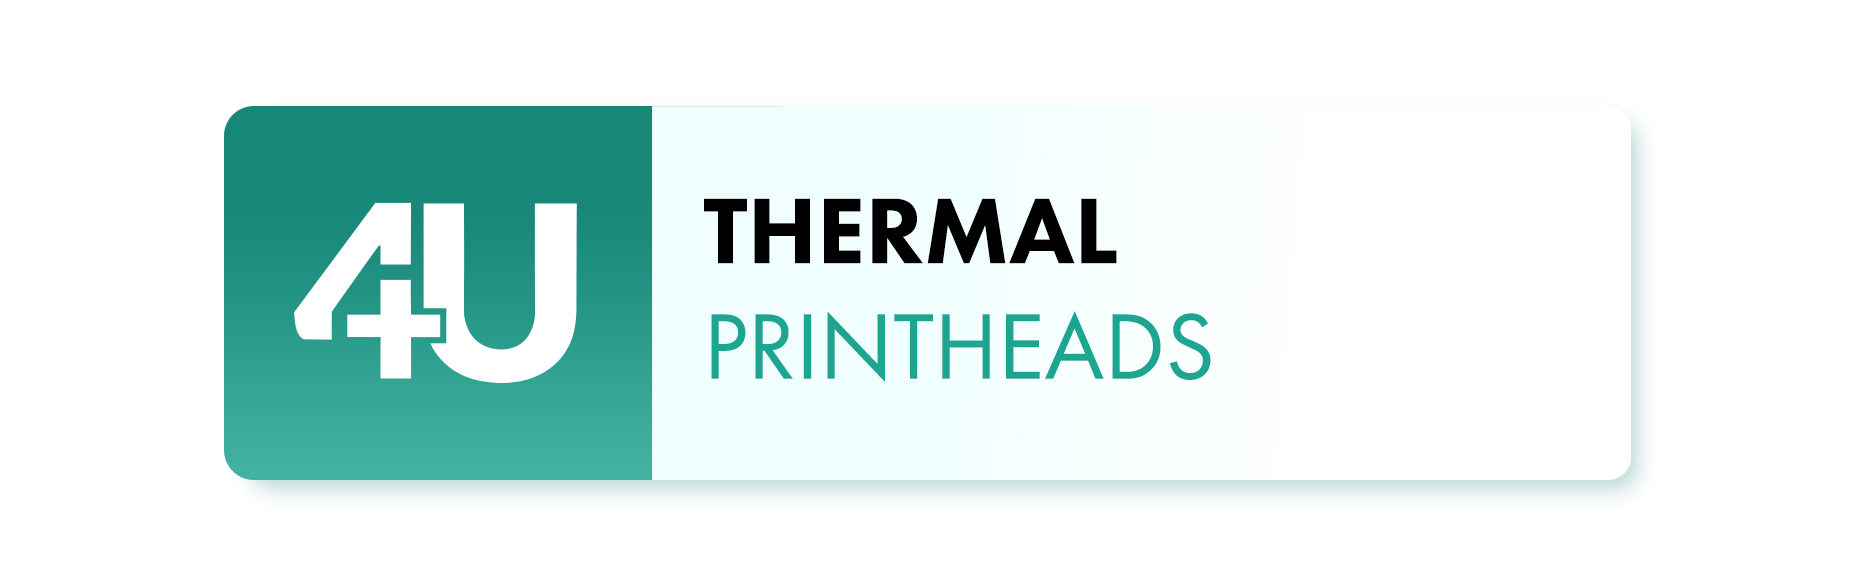 Thermal printheads logo